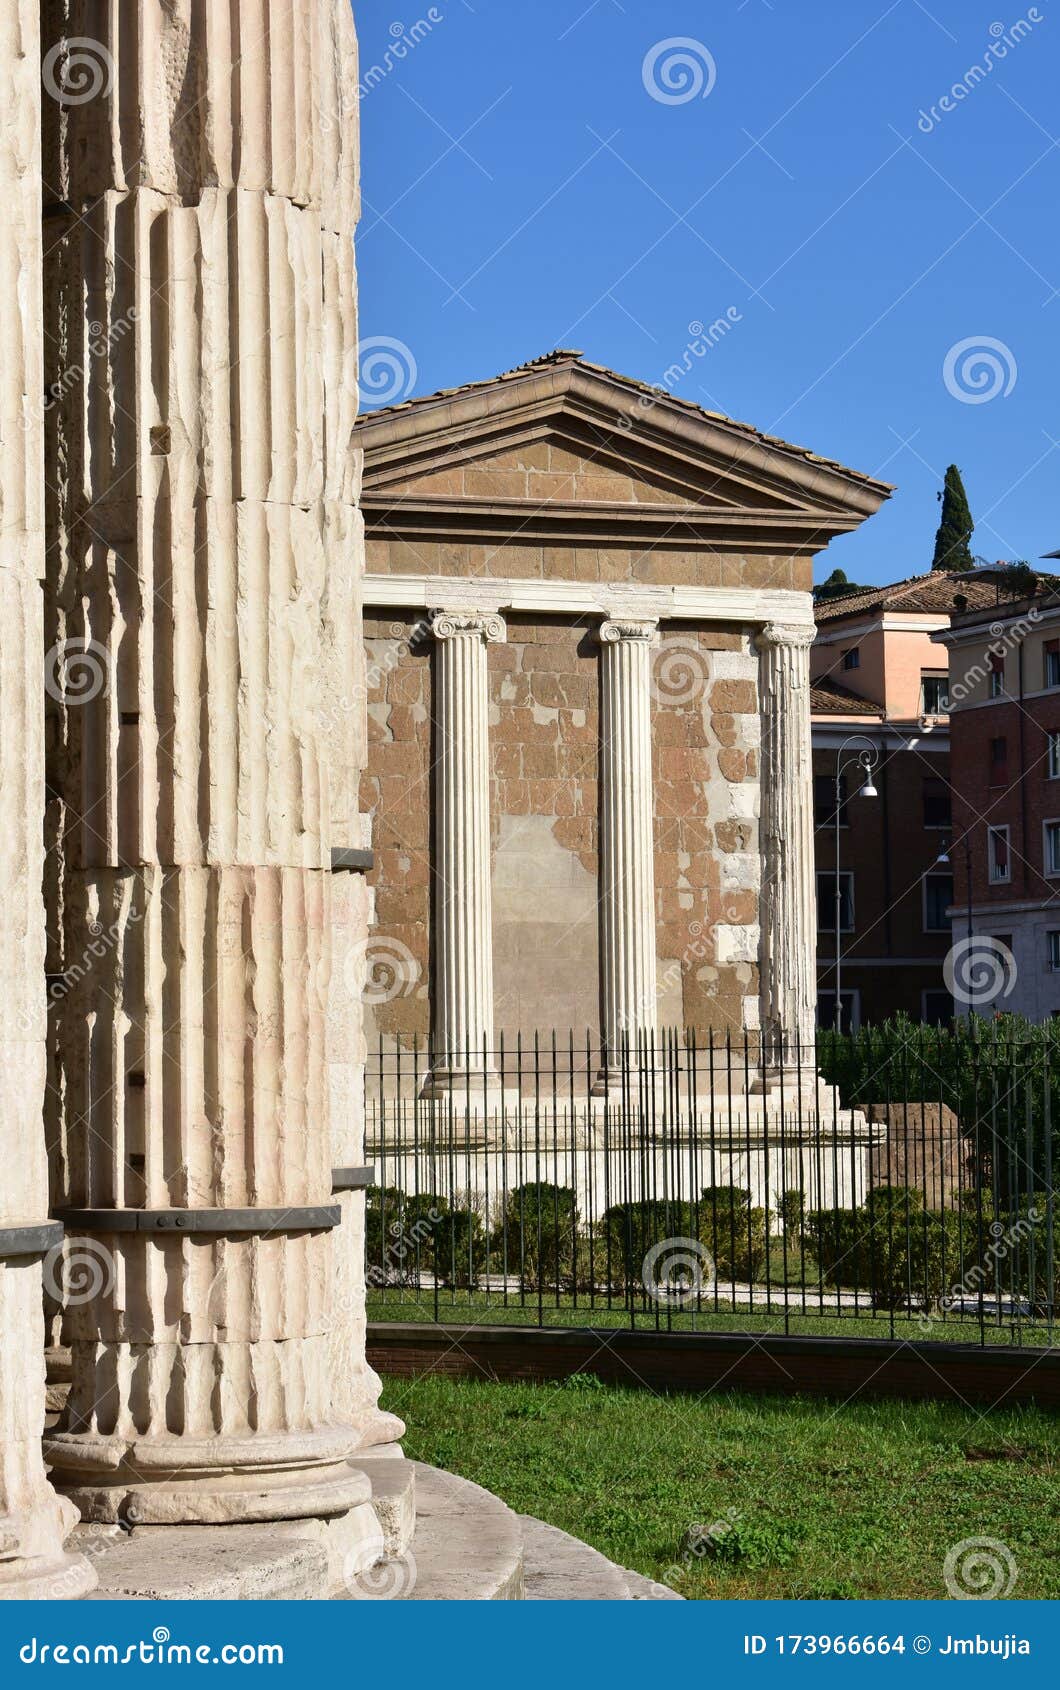 tempio di portuno from tempio di ercole vincitore. ancient roman greek classical style temples. rome, italy.